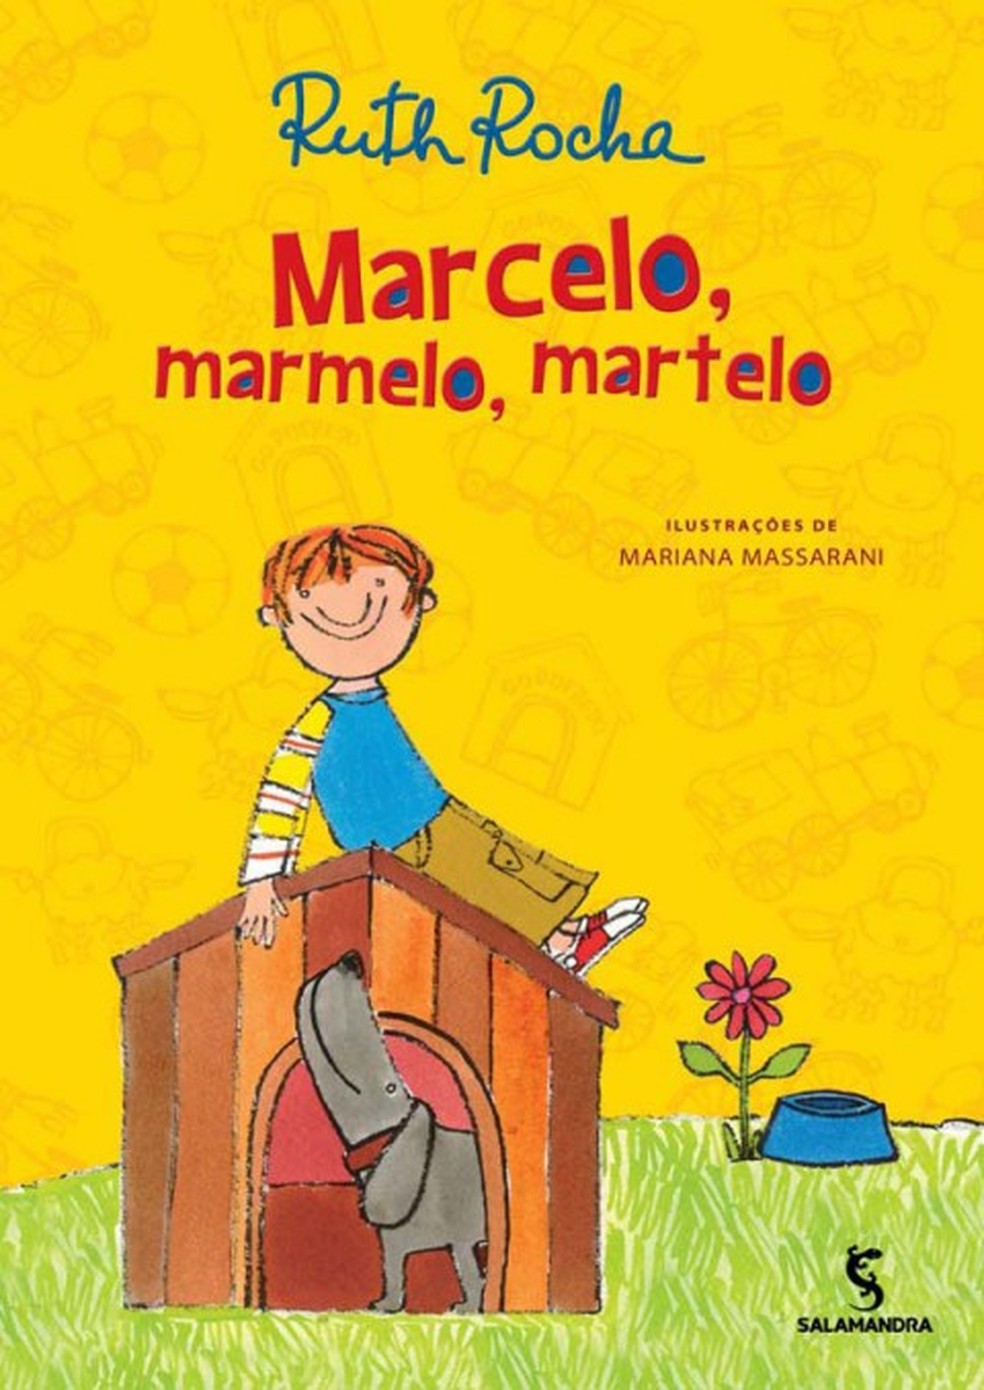 Capa do livro 'Marcelo, marmelo, martelo', de Ruth Rocha — Foto: Reprodução